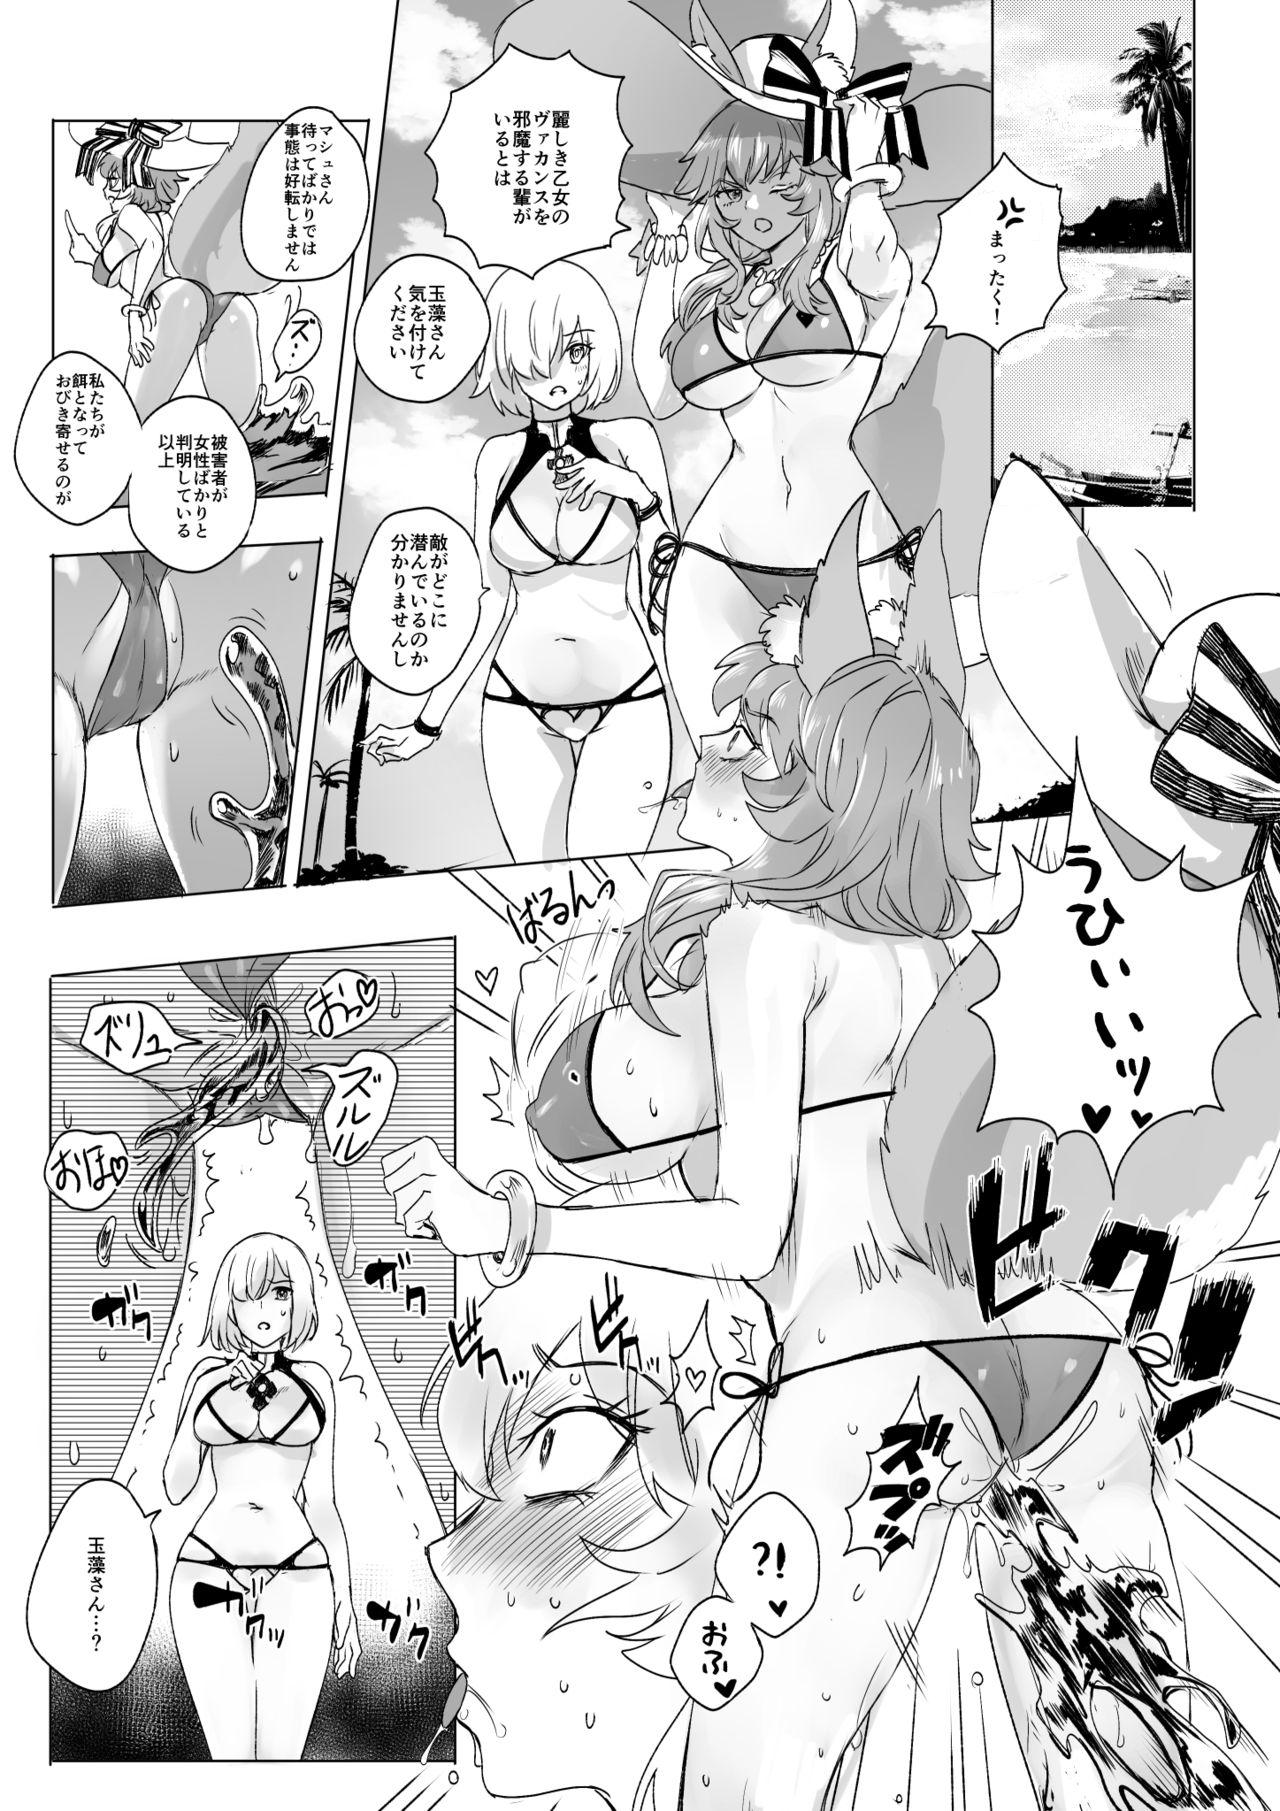 Condom fgoフルカラー漫画 - Fate grand order Facial - Page 7